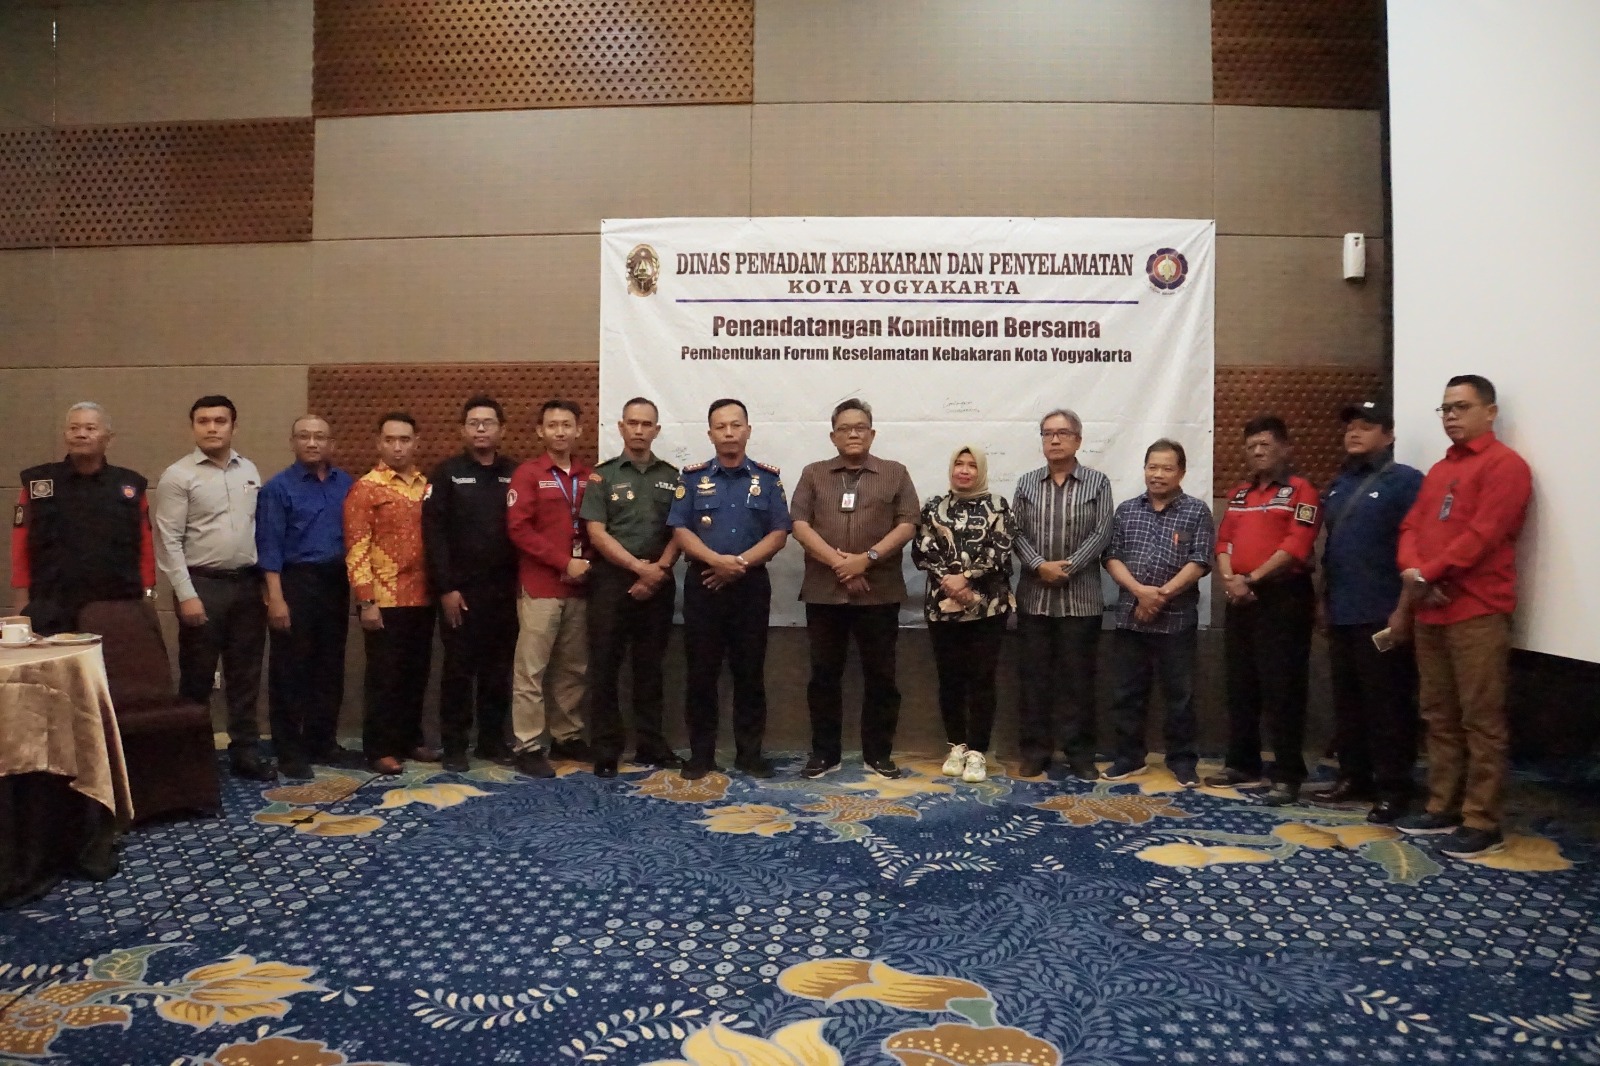 Pemkot Yogyakarta Inisiasi Pembentukan Forum Keselamatan Kebakaran